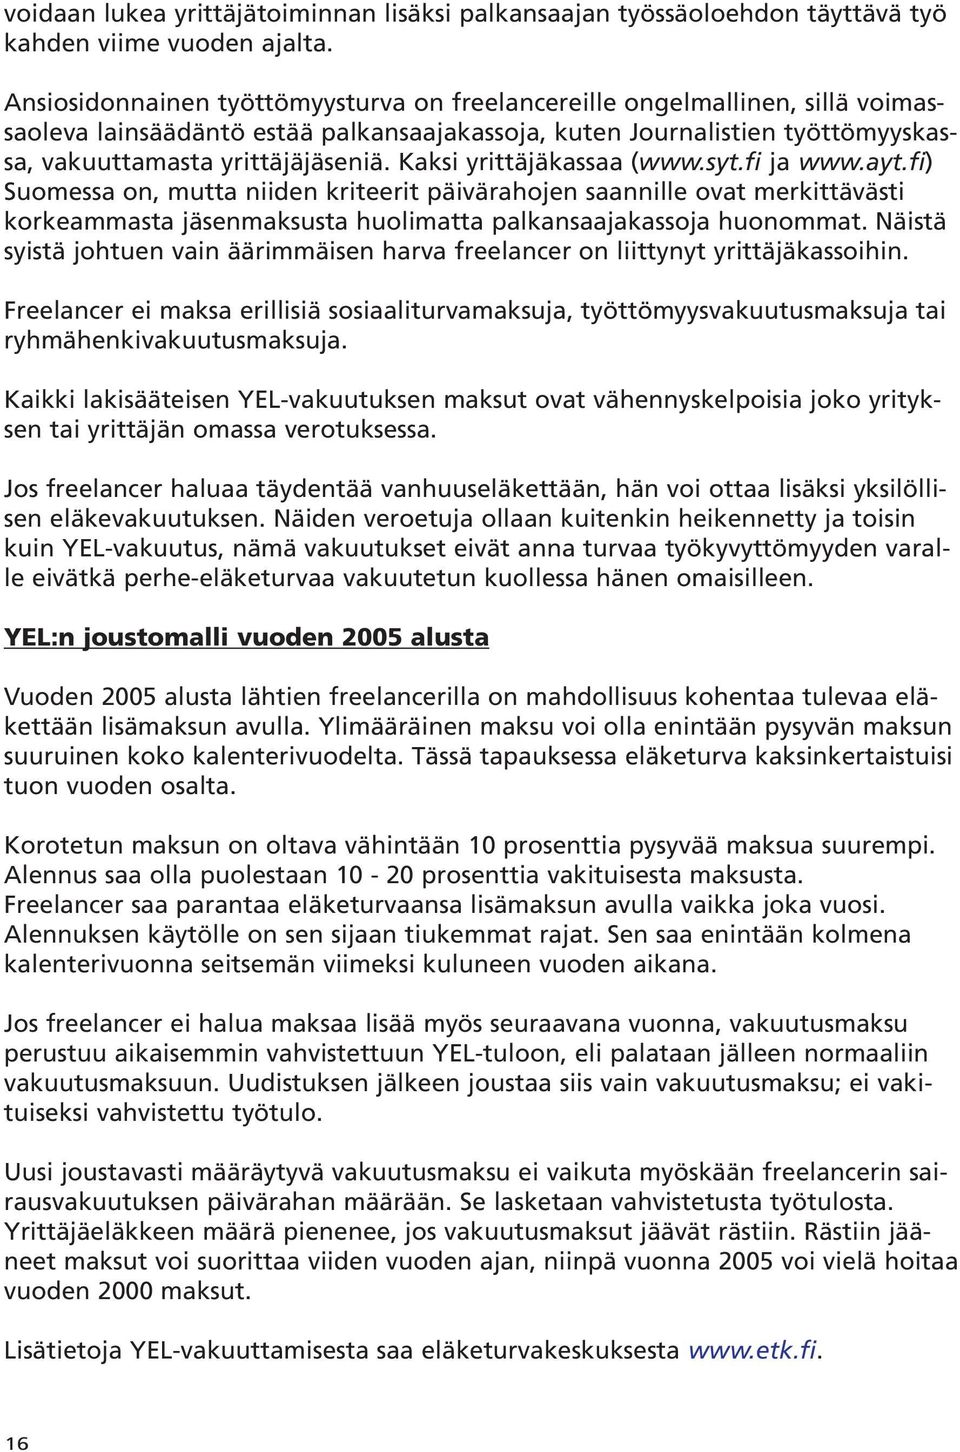 Kaksi yrittäjäkassaa (www.syt.fi ja www.ayt.fi) Suomessa on, mutta niiden kriteerit päivärahojen saannille ovat merkittävästi korkeammasta jäsenmaksusta huolimatta palkansaajakassoja huonommat.